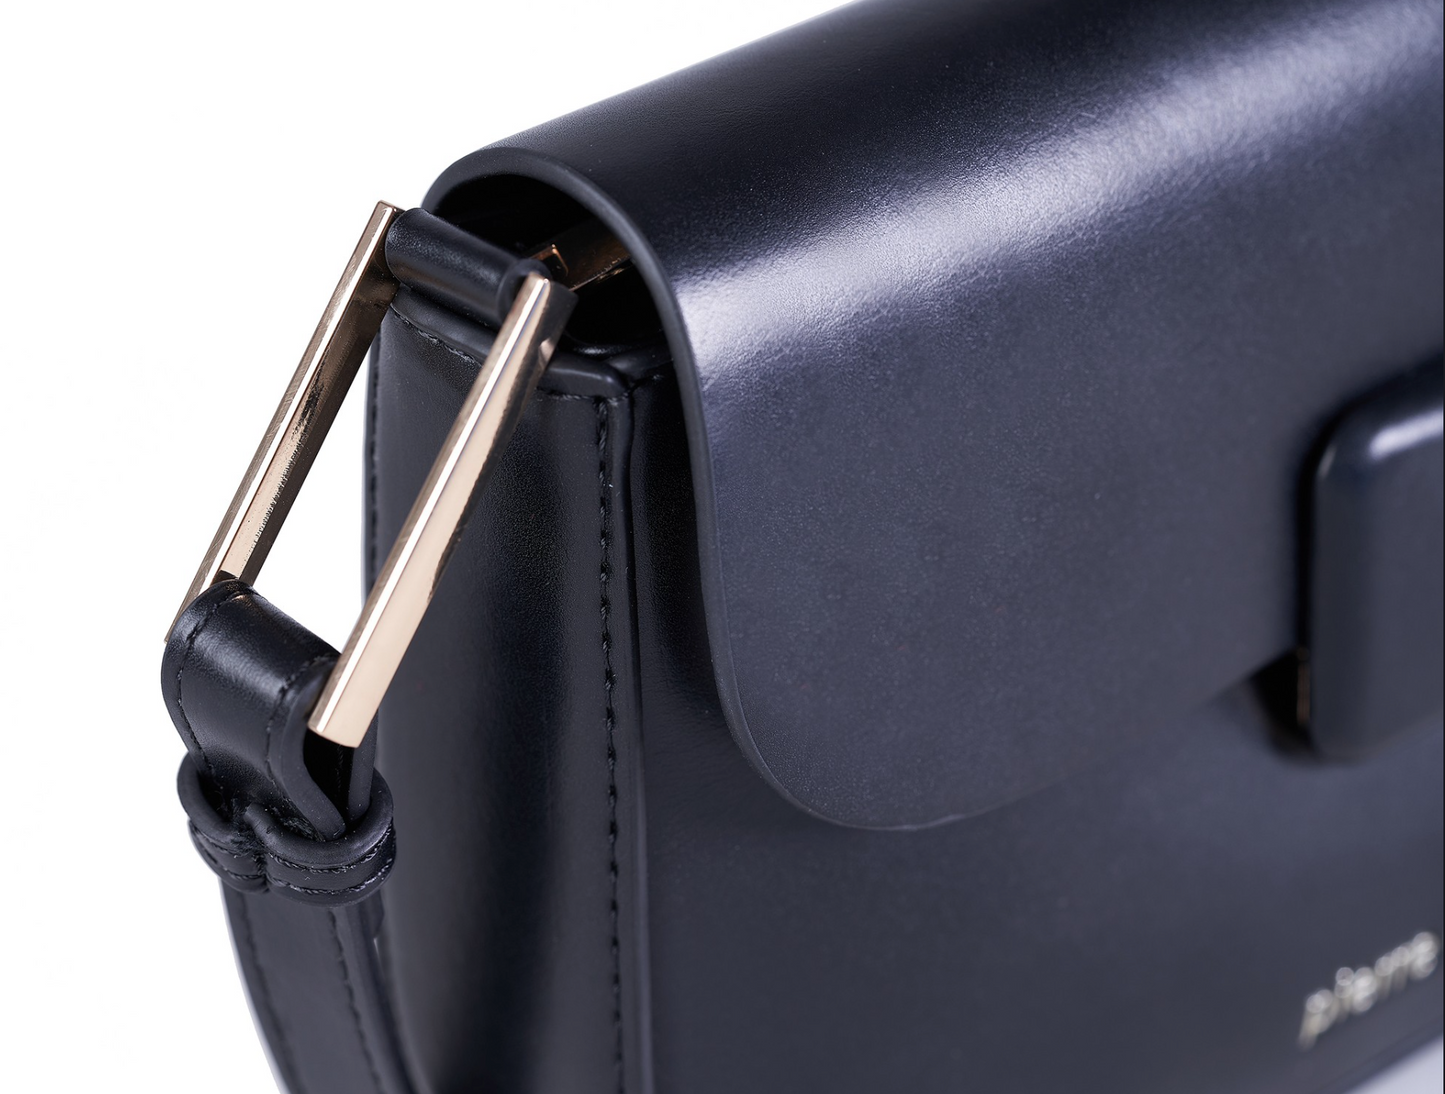 Cardin eco leather light blue handbag for women